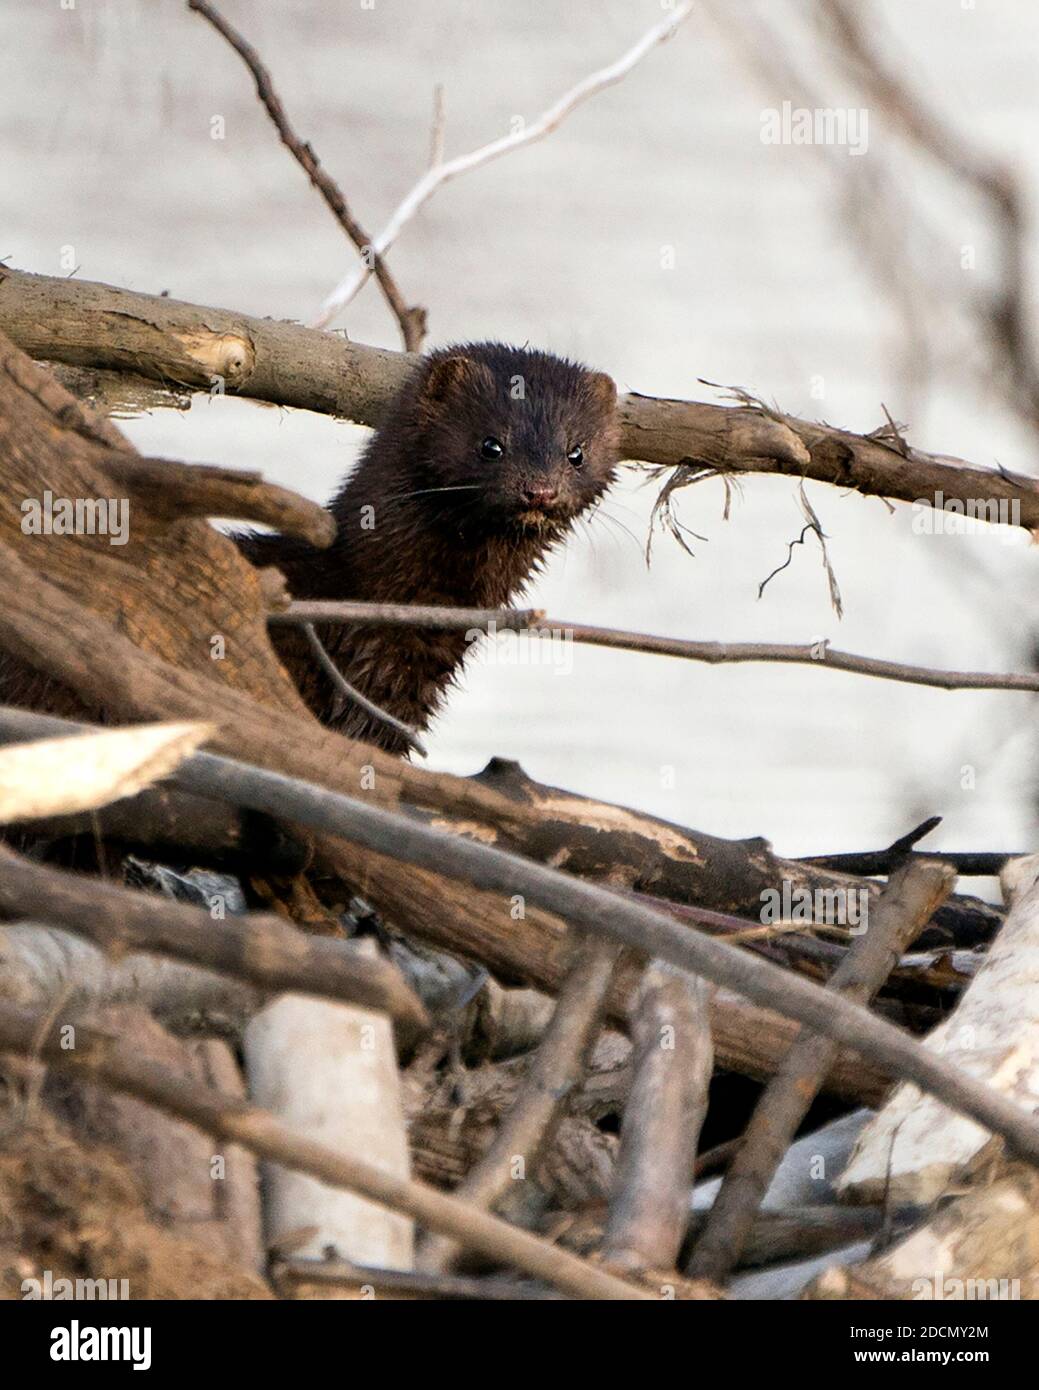 Vista del profilo in primo piano della testa mink in tronchi scavati che guardano la telecamera con uno sfondo sfocato nell'ambiente e nell'habitat. Immagine mink. Mink Foto. Testa Foto Stock